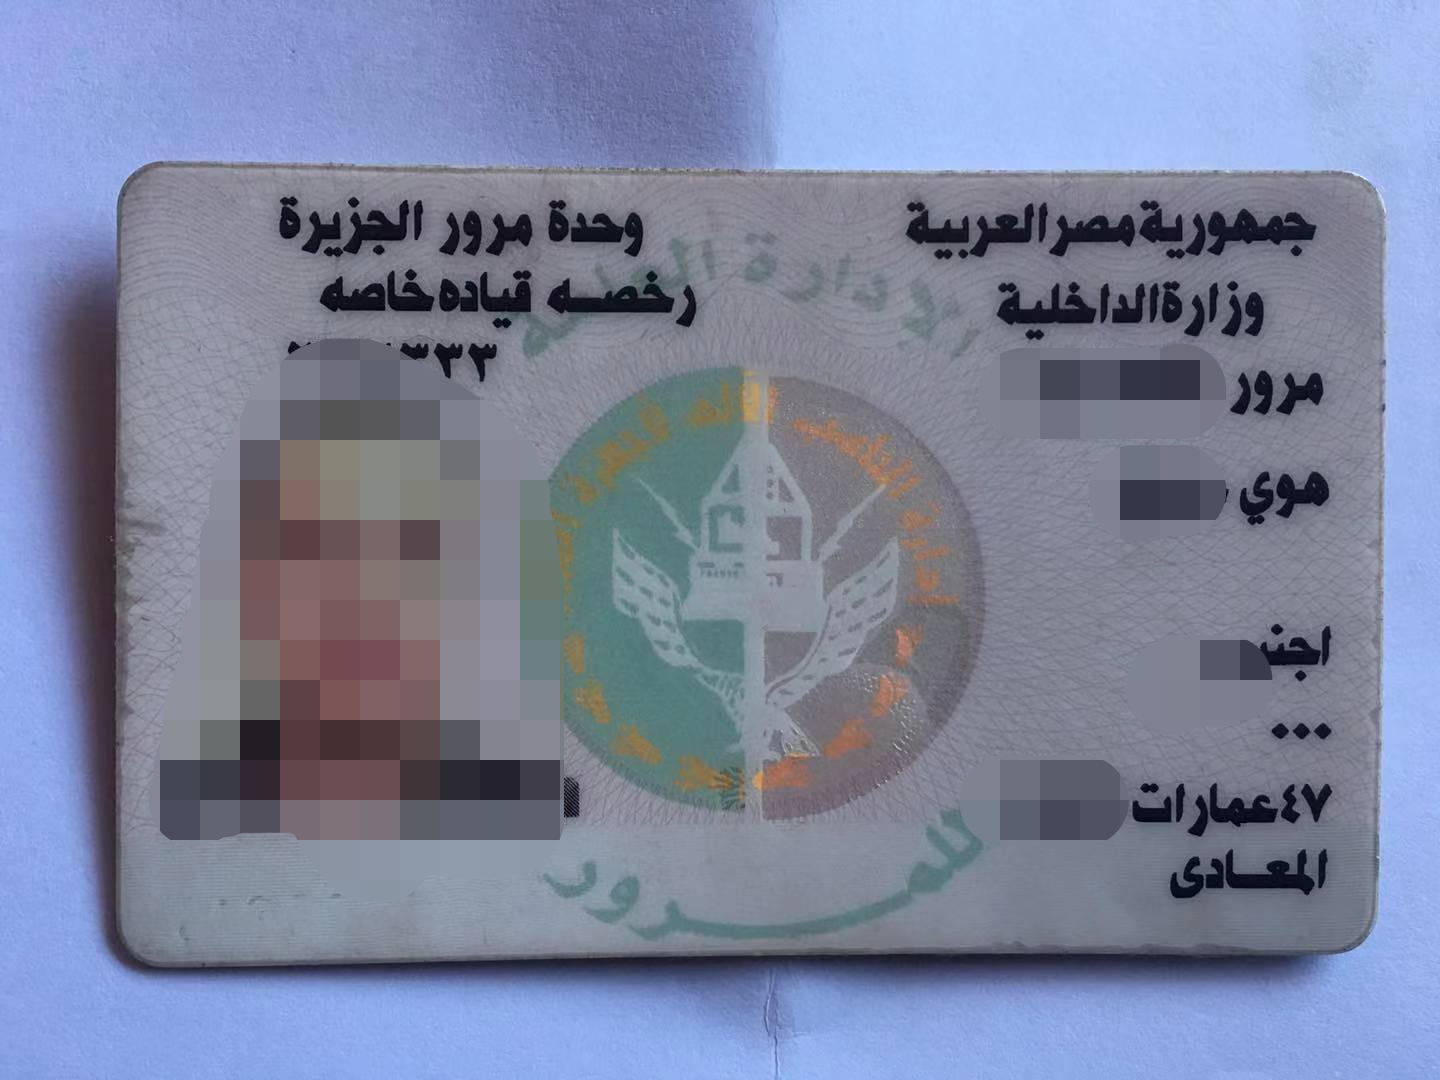 埃及驾照.png